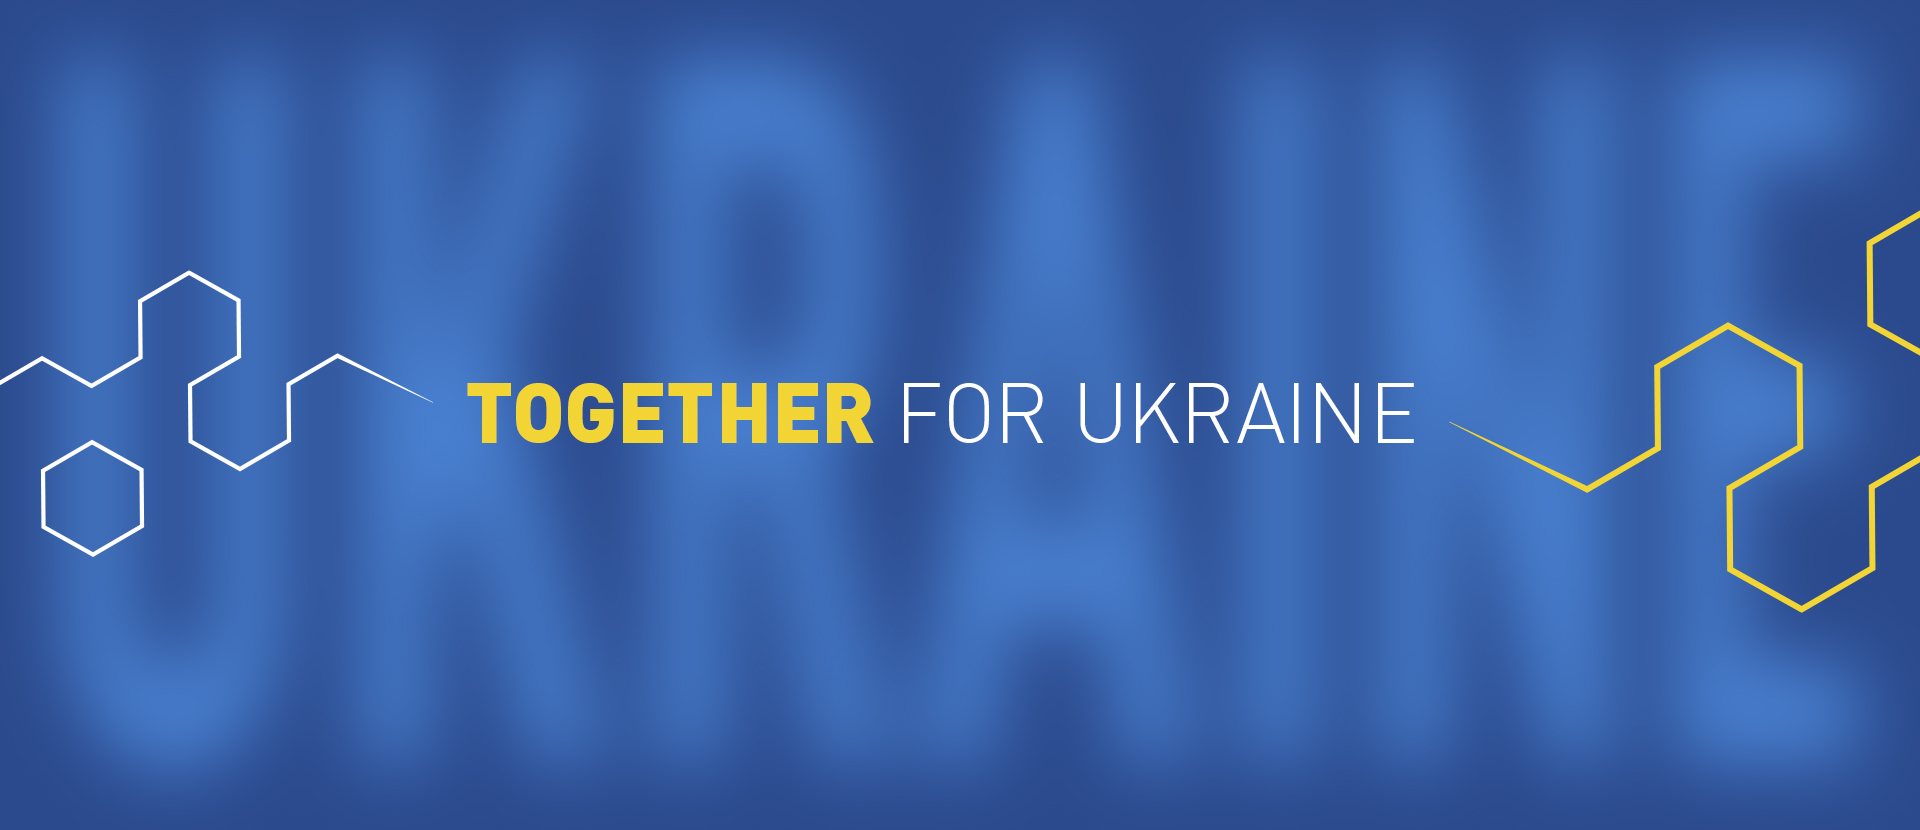 TOGETHER FOR UKRAINE!